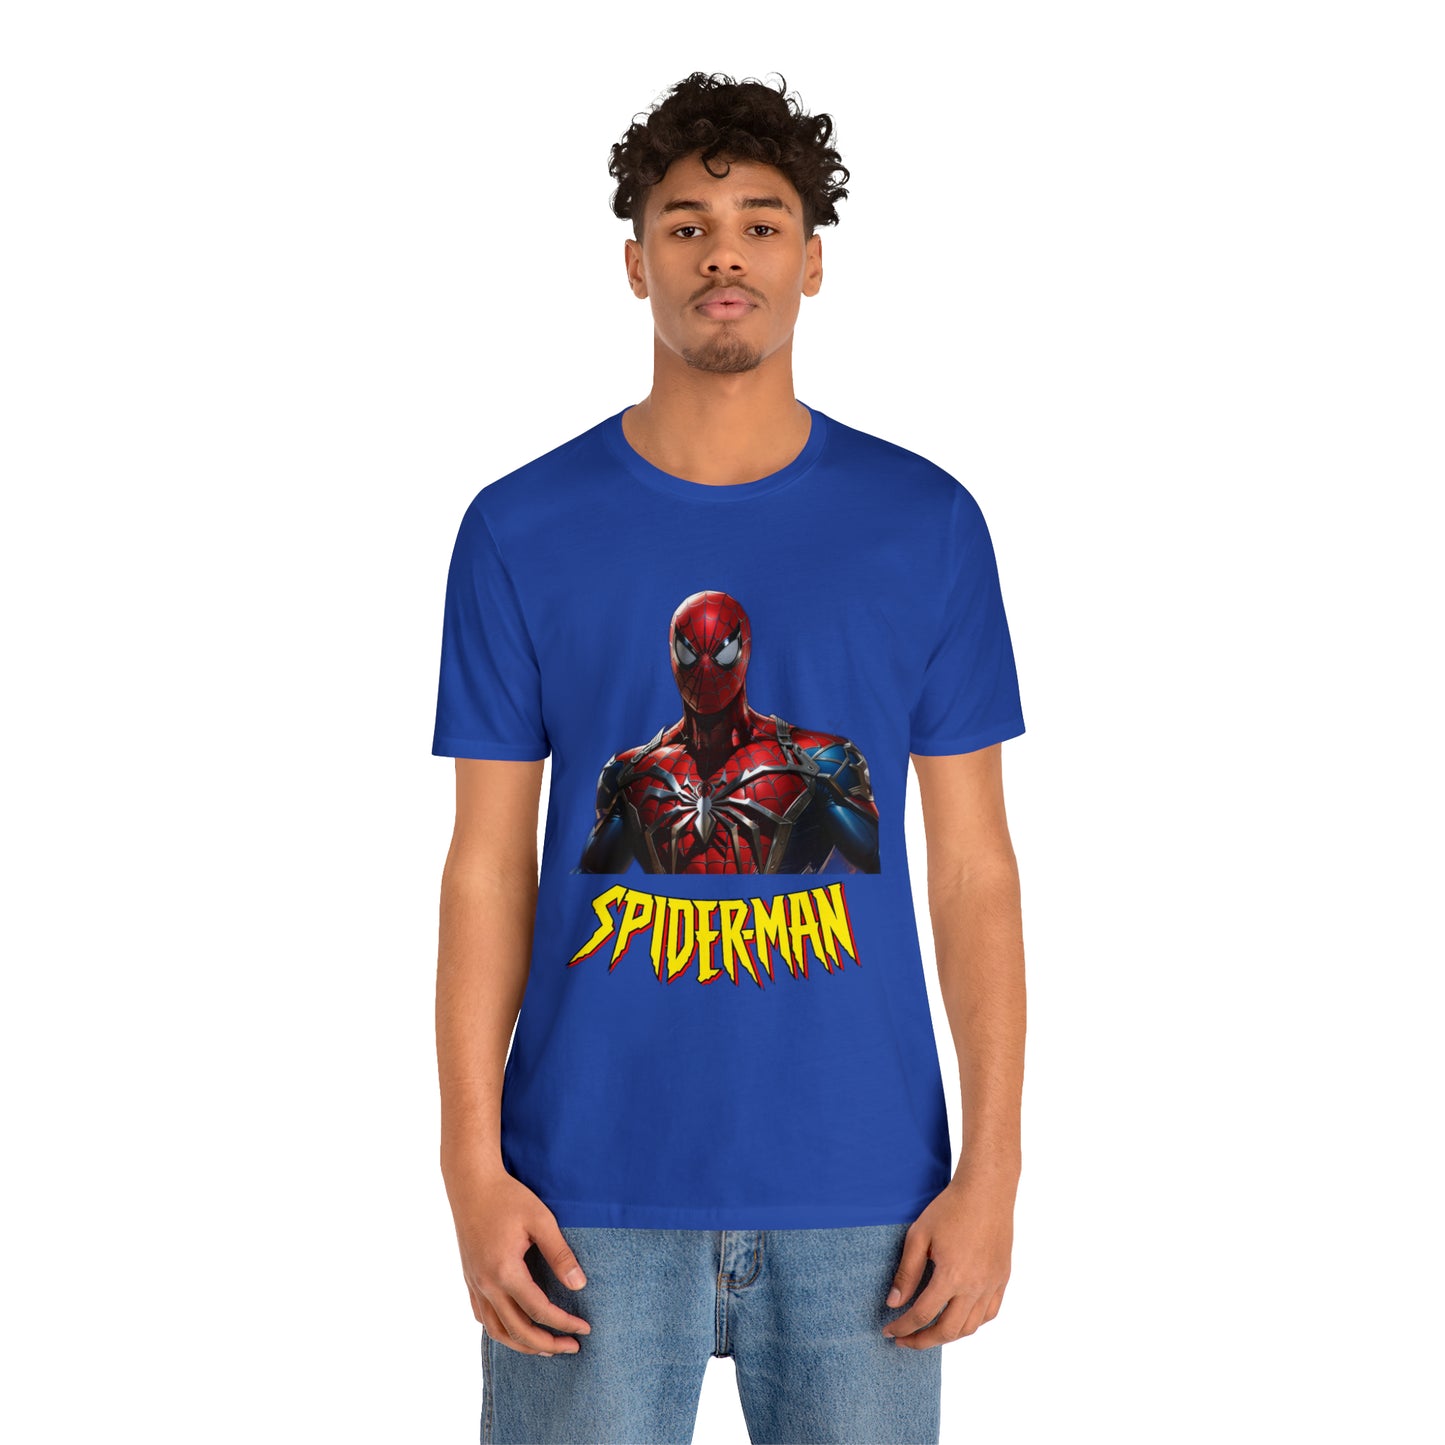 Spiderman Unisex Jersey Short Sleeve Tee